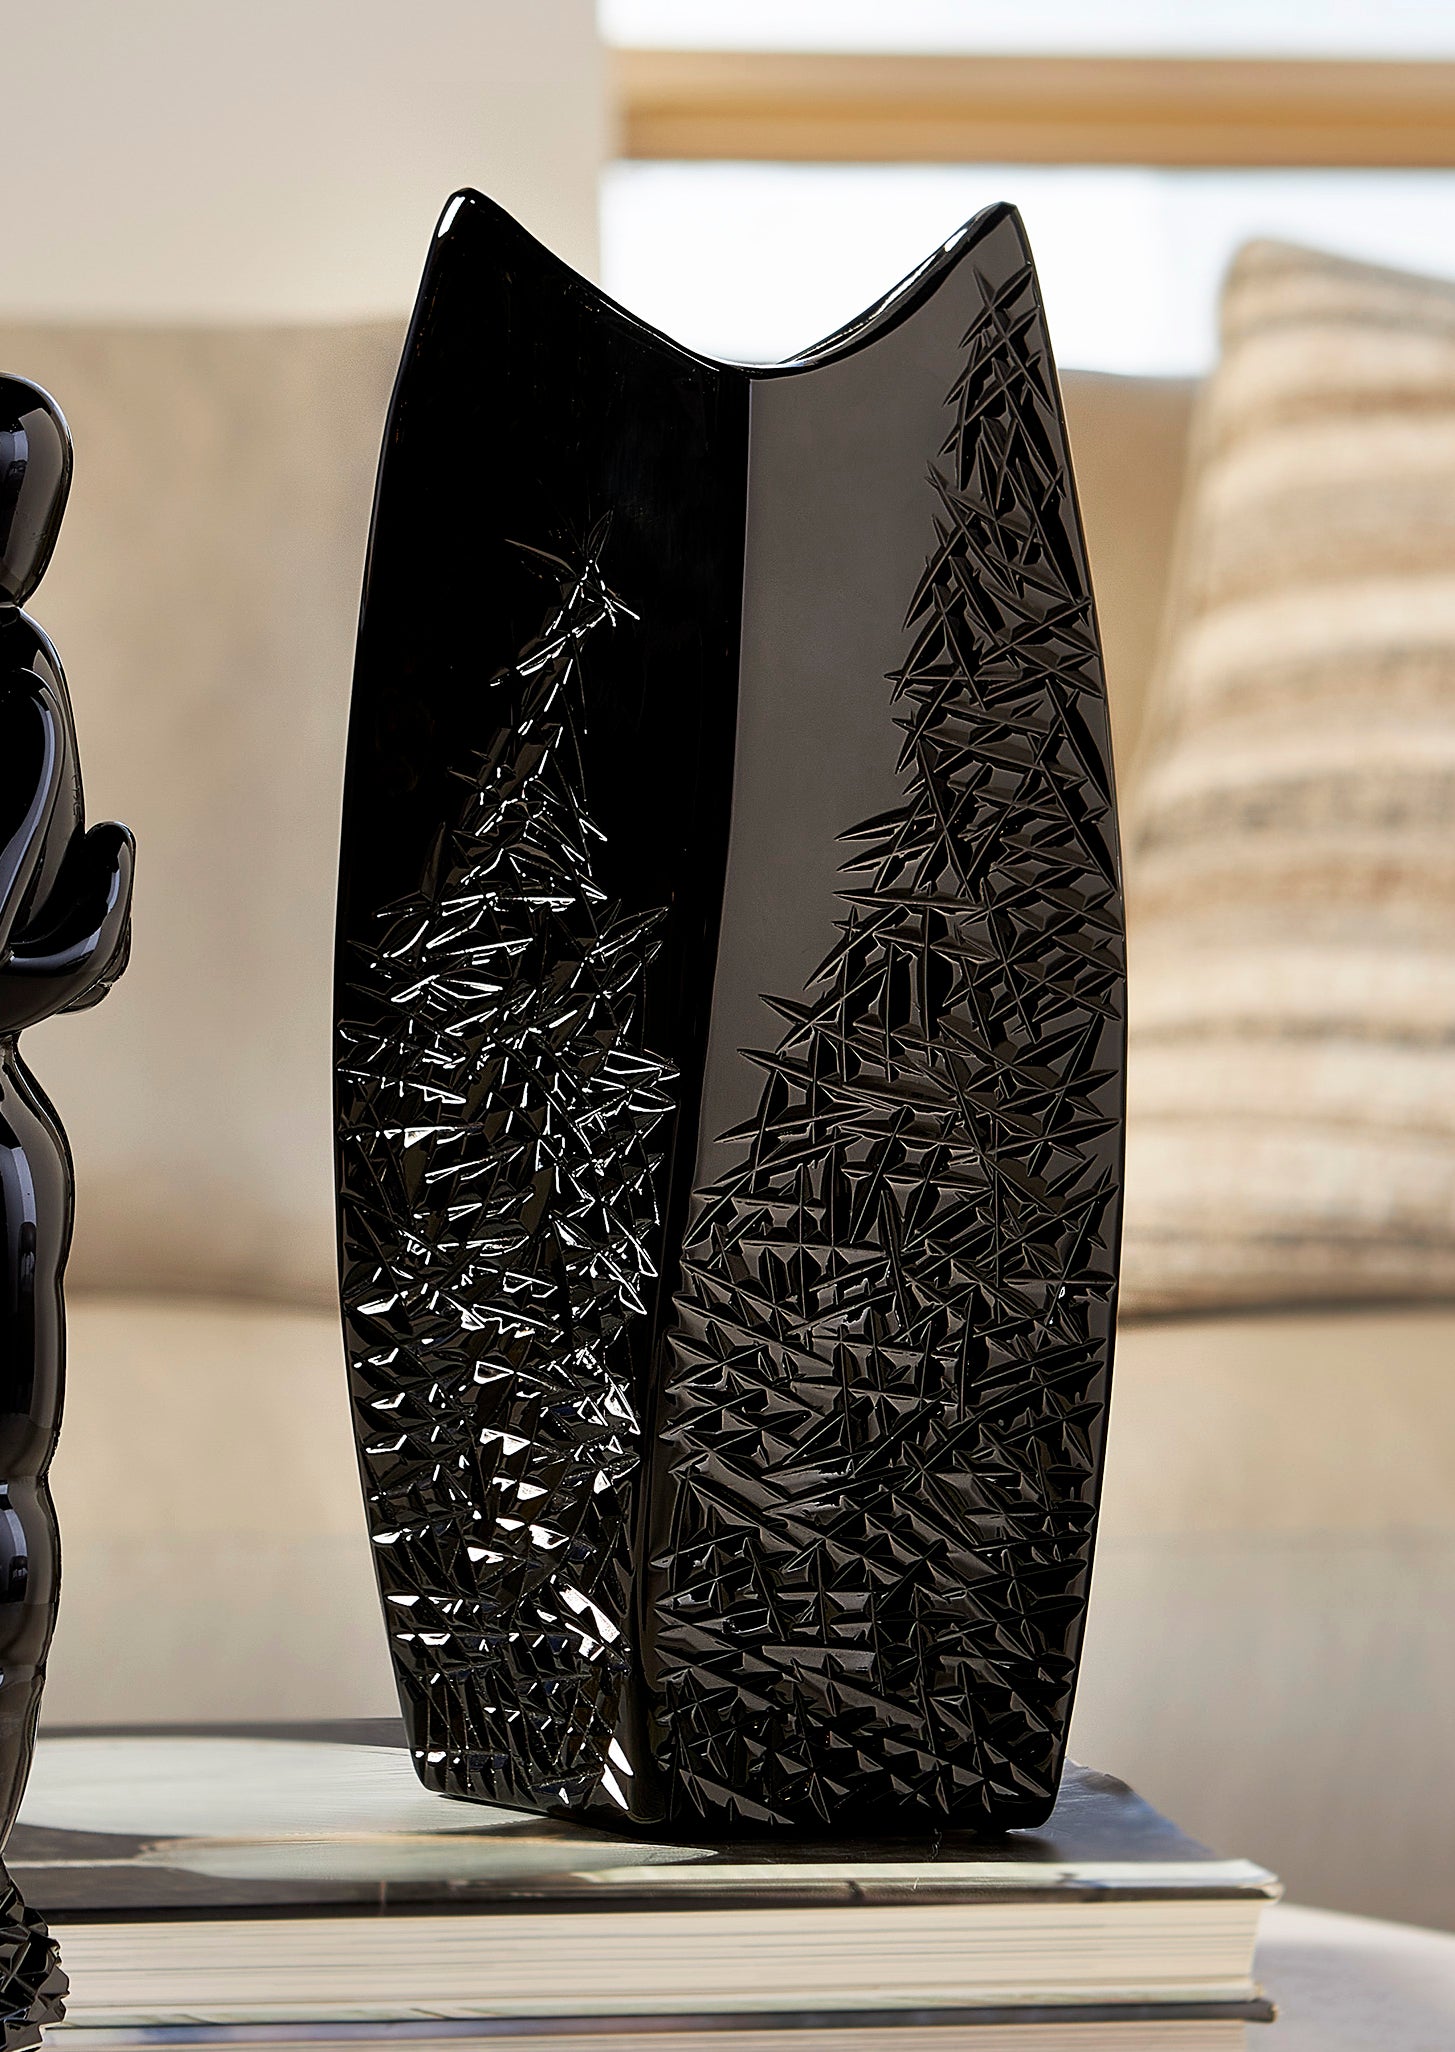 Art Sculpture Ceramic Vase – The Refined Emporium